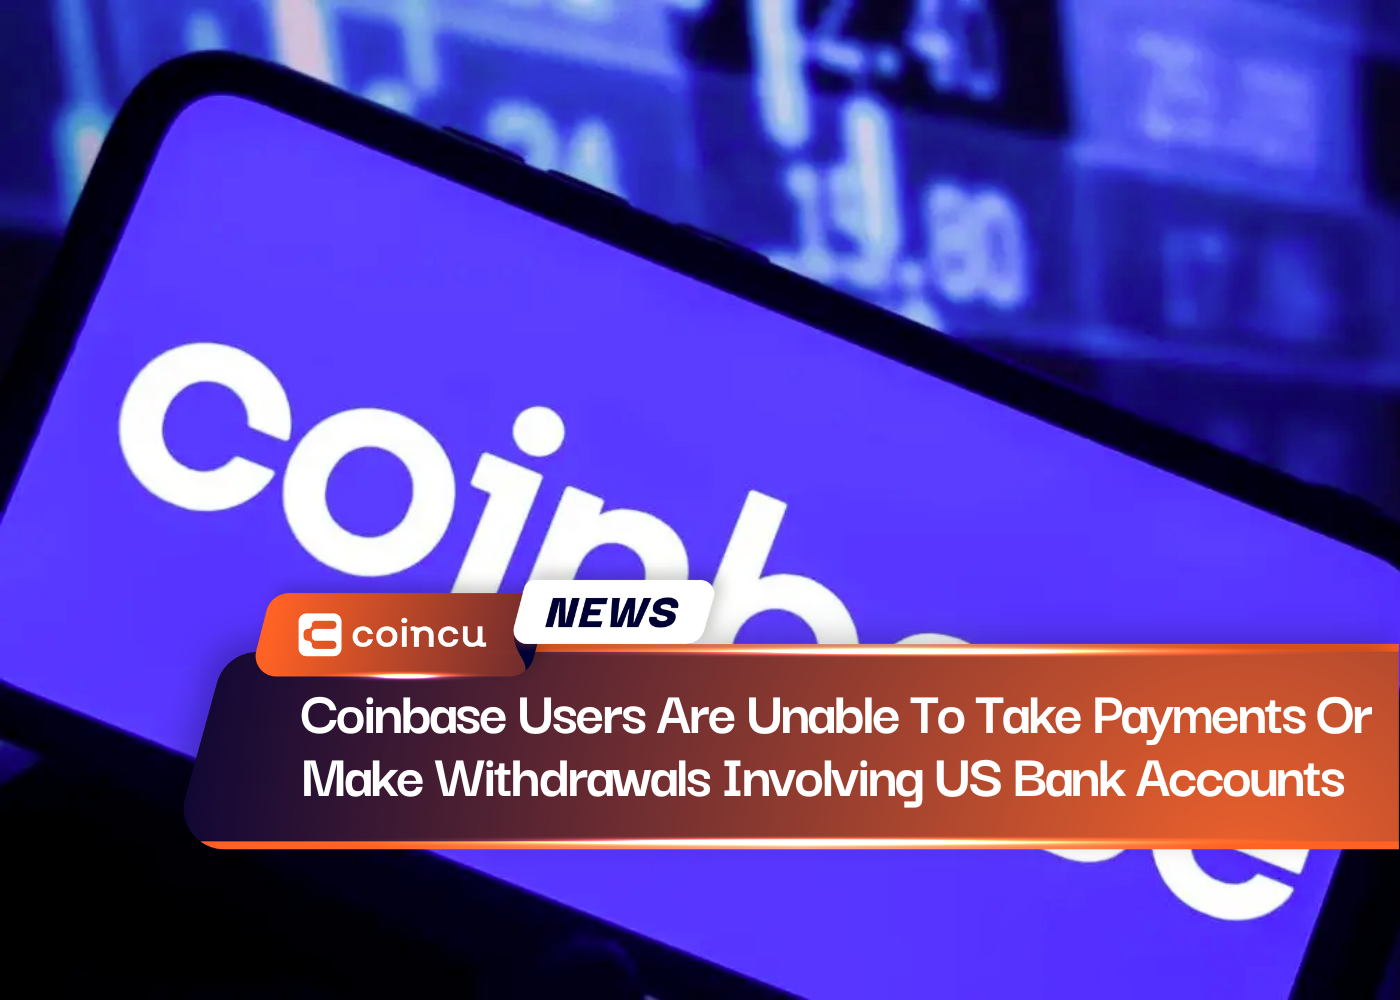 Les utilisateurs de Coinbase ne peuvent pas accepter de paiements ni effectuer de retraits sur des comptes bancaires américains